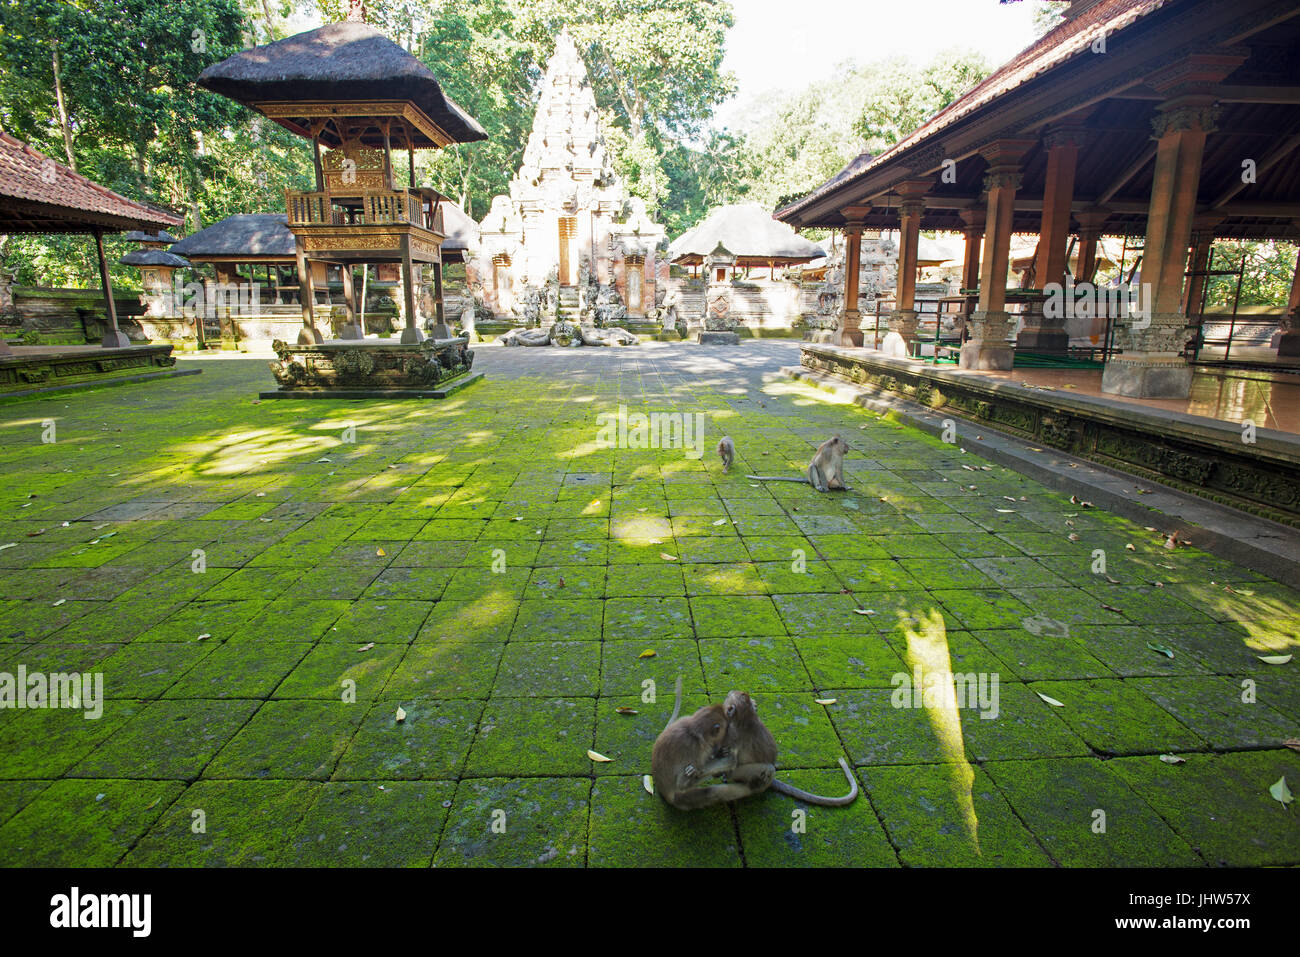 Hindu temple, Pura Dalem Agung, Monkey Forest, Ubud, Bali, Indonesia Stock Photo